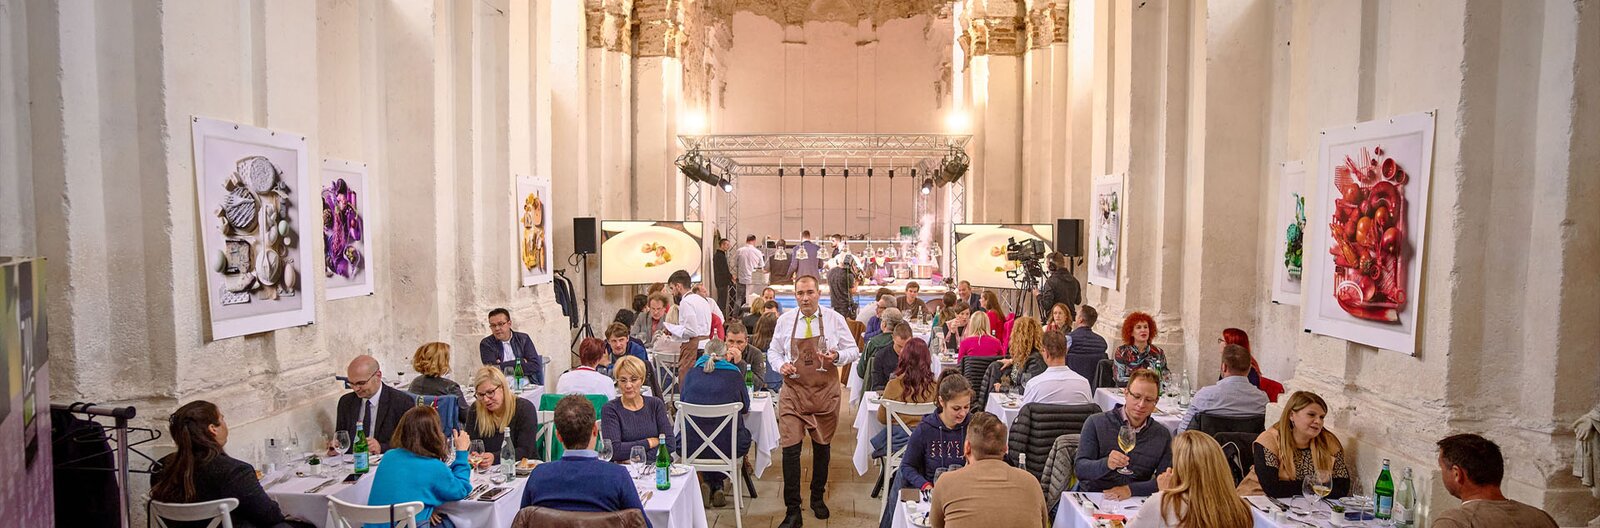 Michelin-élmény, gyerekprogramok, kóstolók – Kedvenc gasztroprogramjaink a Balaton Wine & Gourmet fesztiválon